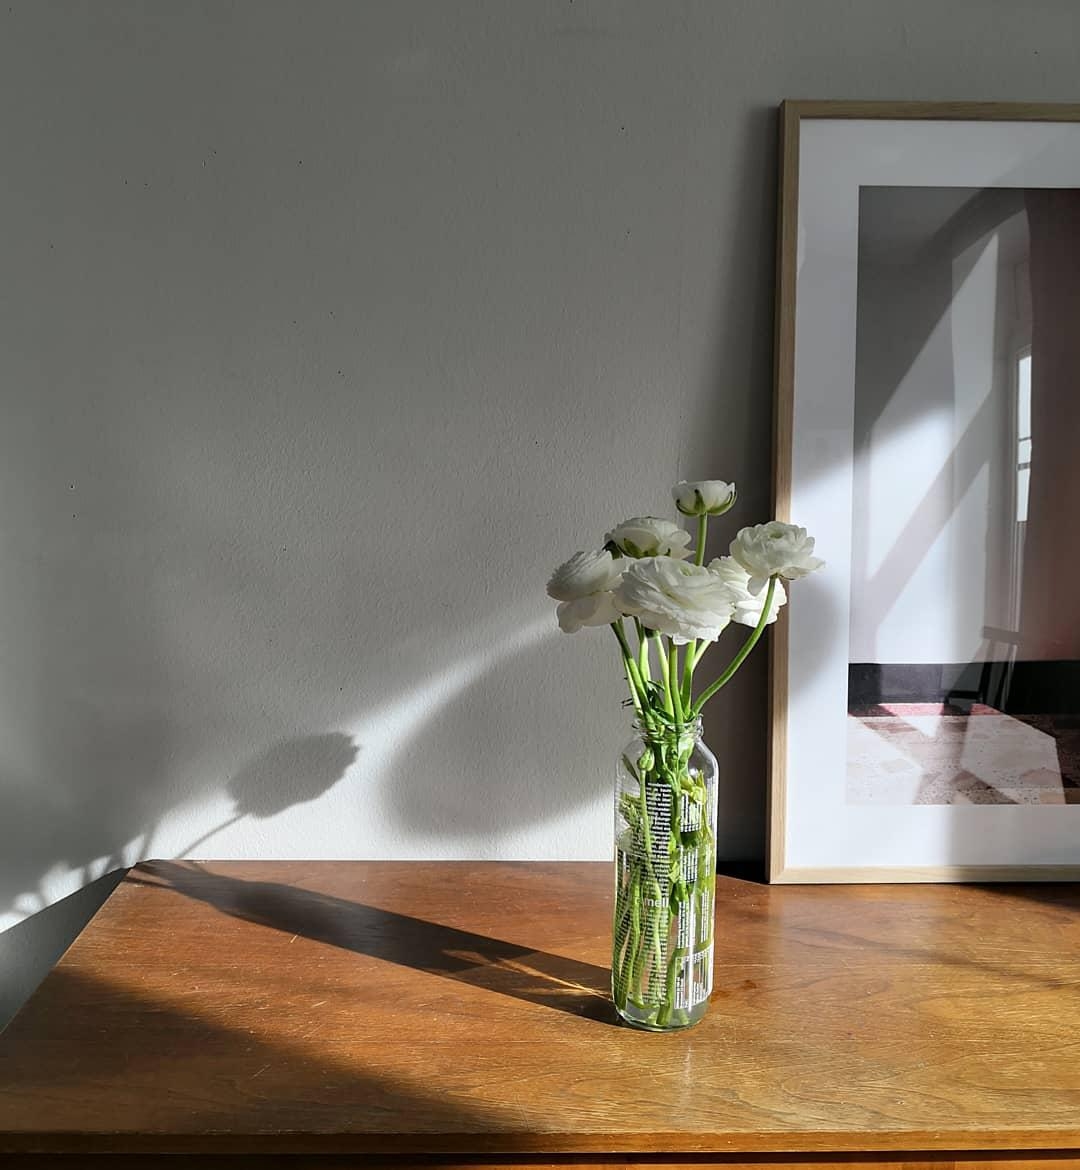 Ein kleines #tb vom März 💕🌸
#flowers #sideboard #vintage #lichtundschatten #livingroom 